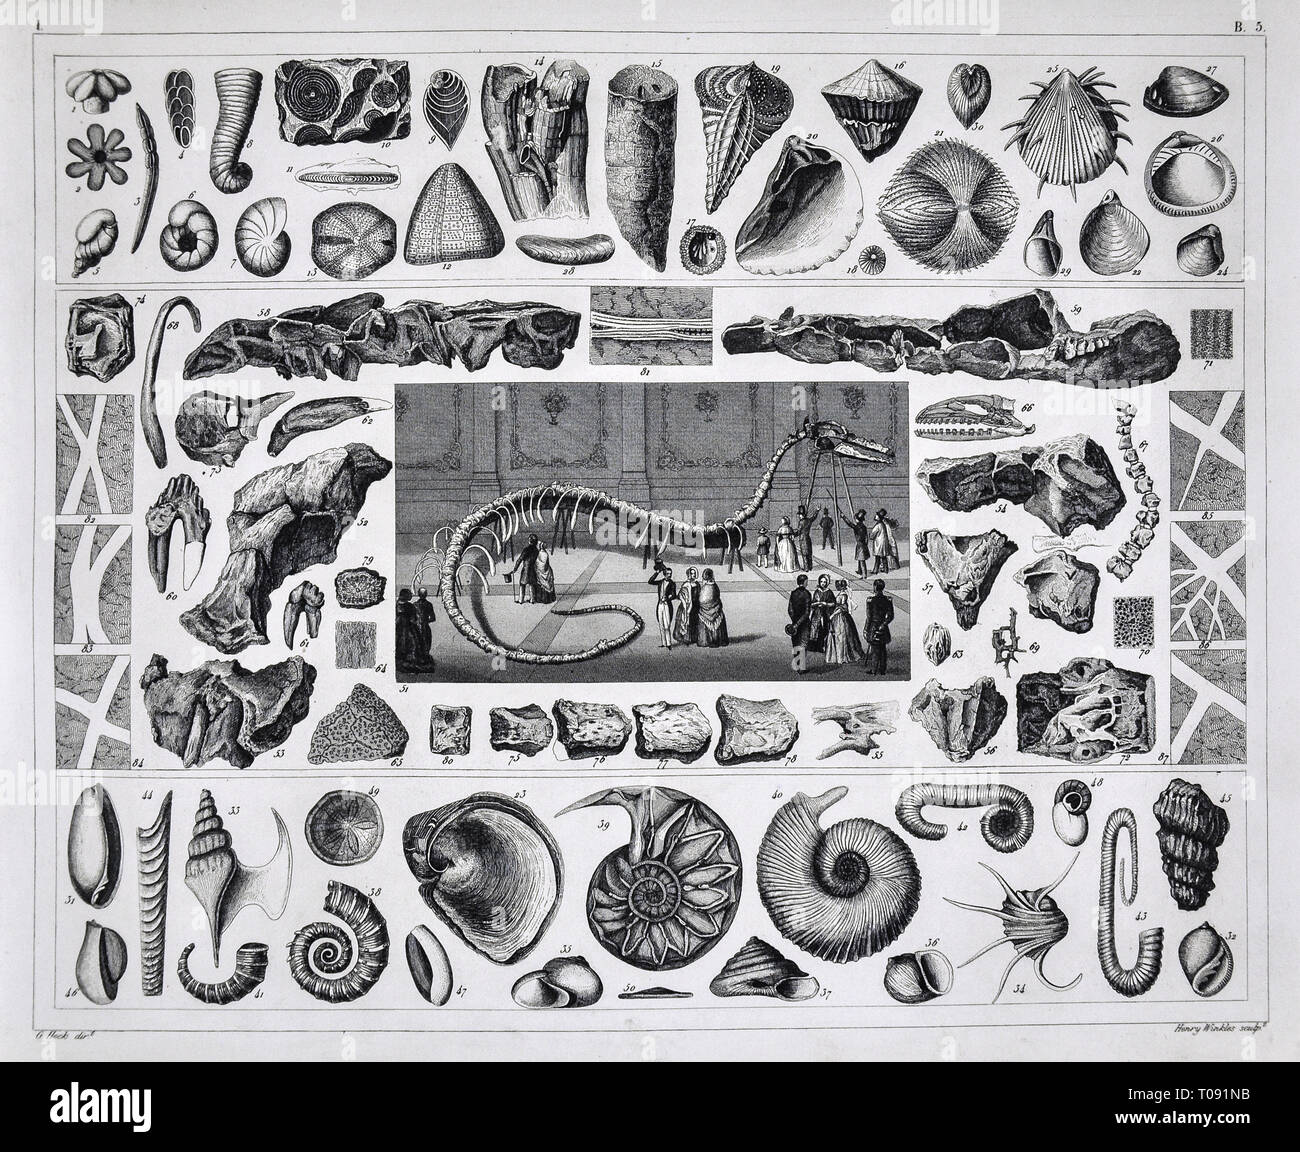 1849 Bilder Atlas Print - fósiles marinos prehistóricos del periodo Jurásico con plesiosaurio esqueleto en el Museo Foto de stock